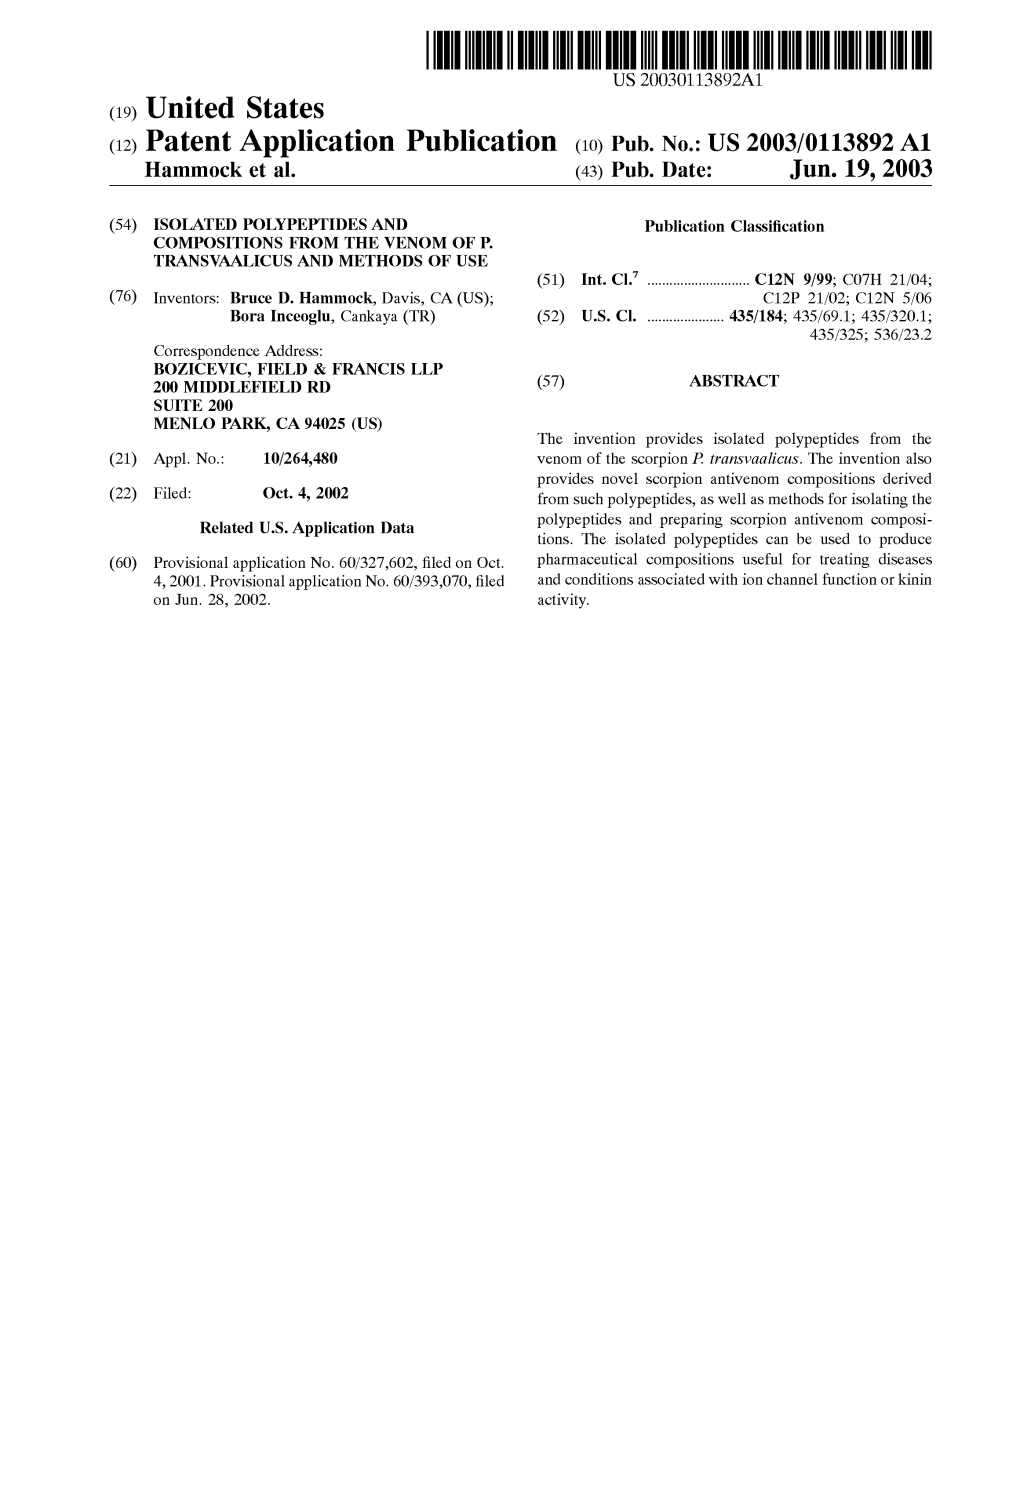 (12) Patent Application Publication (10) Pub. No.: US 2003/0113892 A1 Hammock Et Al